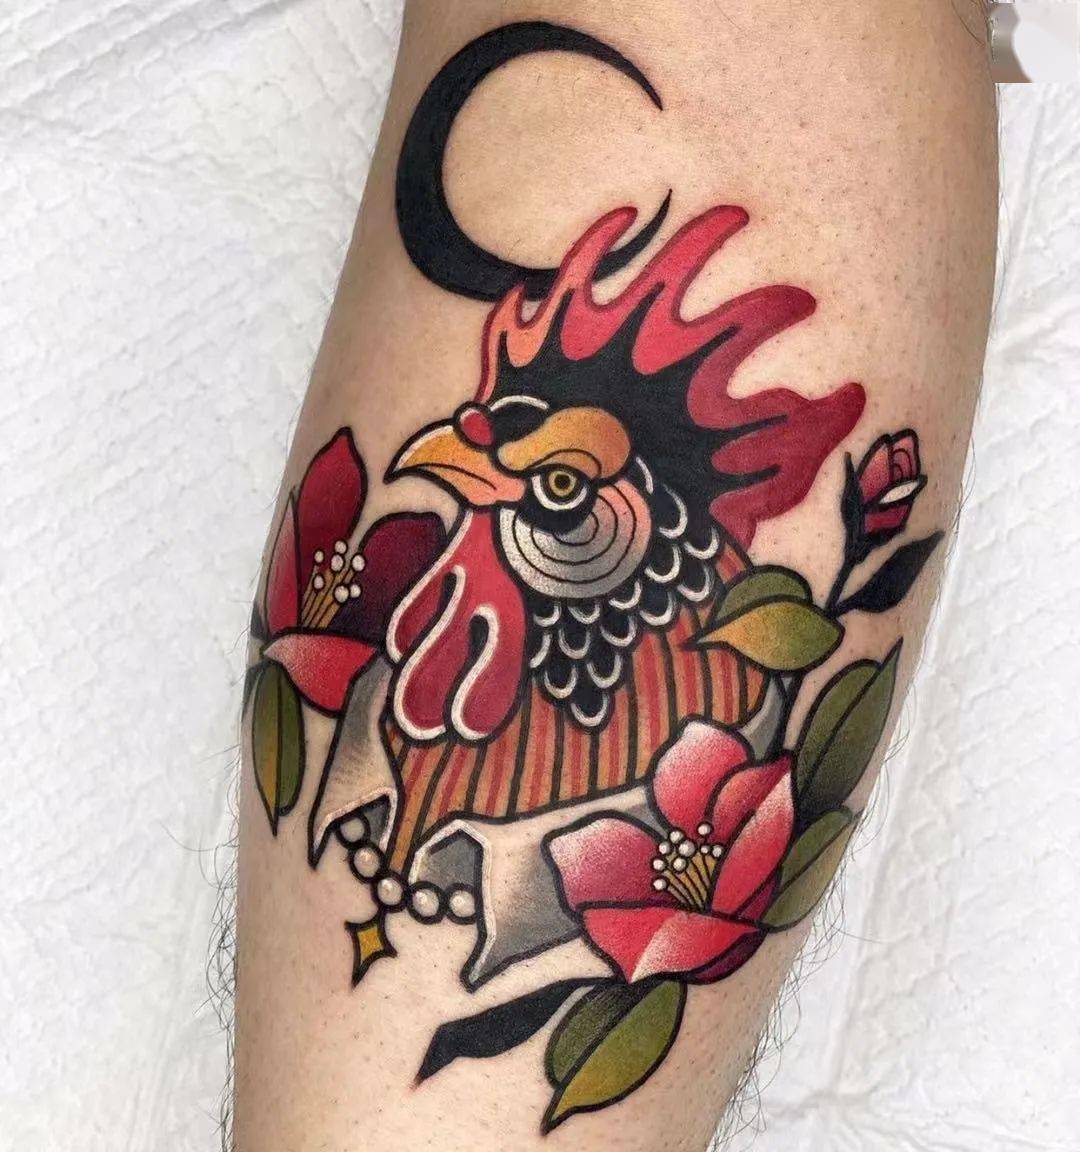 属鸡的纹身什么旺财图,属鸡的人适合纹身图案 - 伤感说说吧